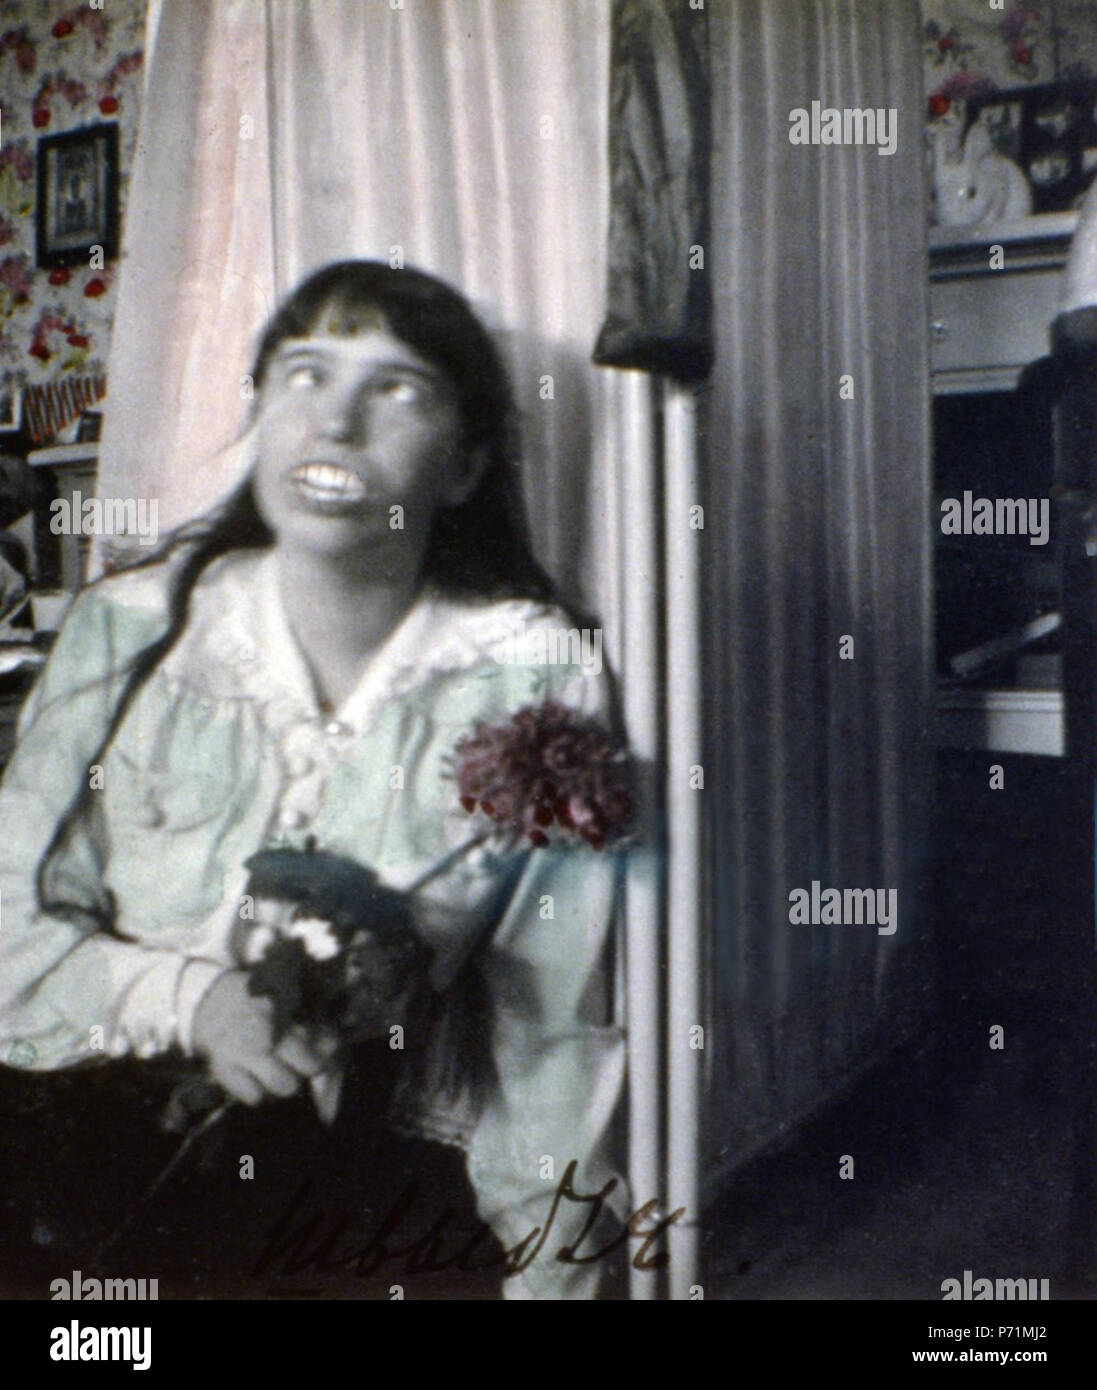 Inglés: Anastasia Nikolaevna de Rusia travesuras. 1915 o 1916 8 Anastasia Nikolaevna de Rusia jugando Foto de stock